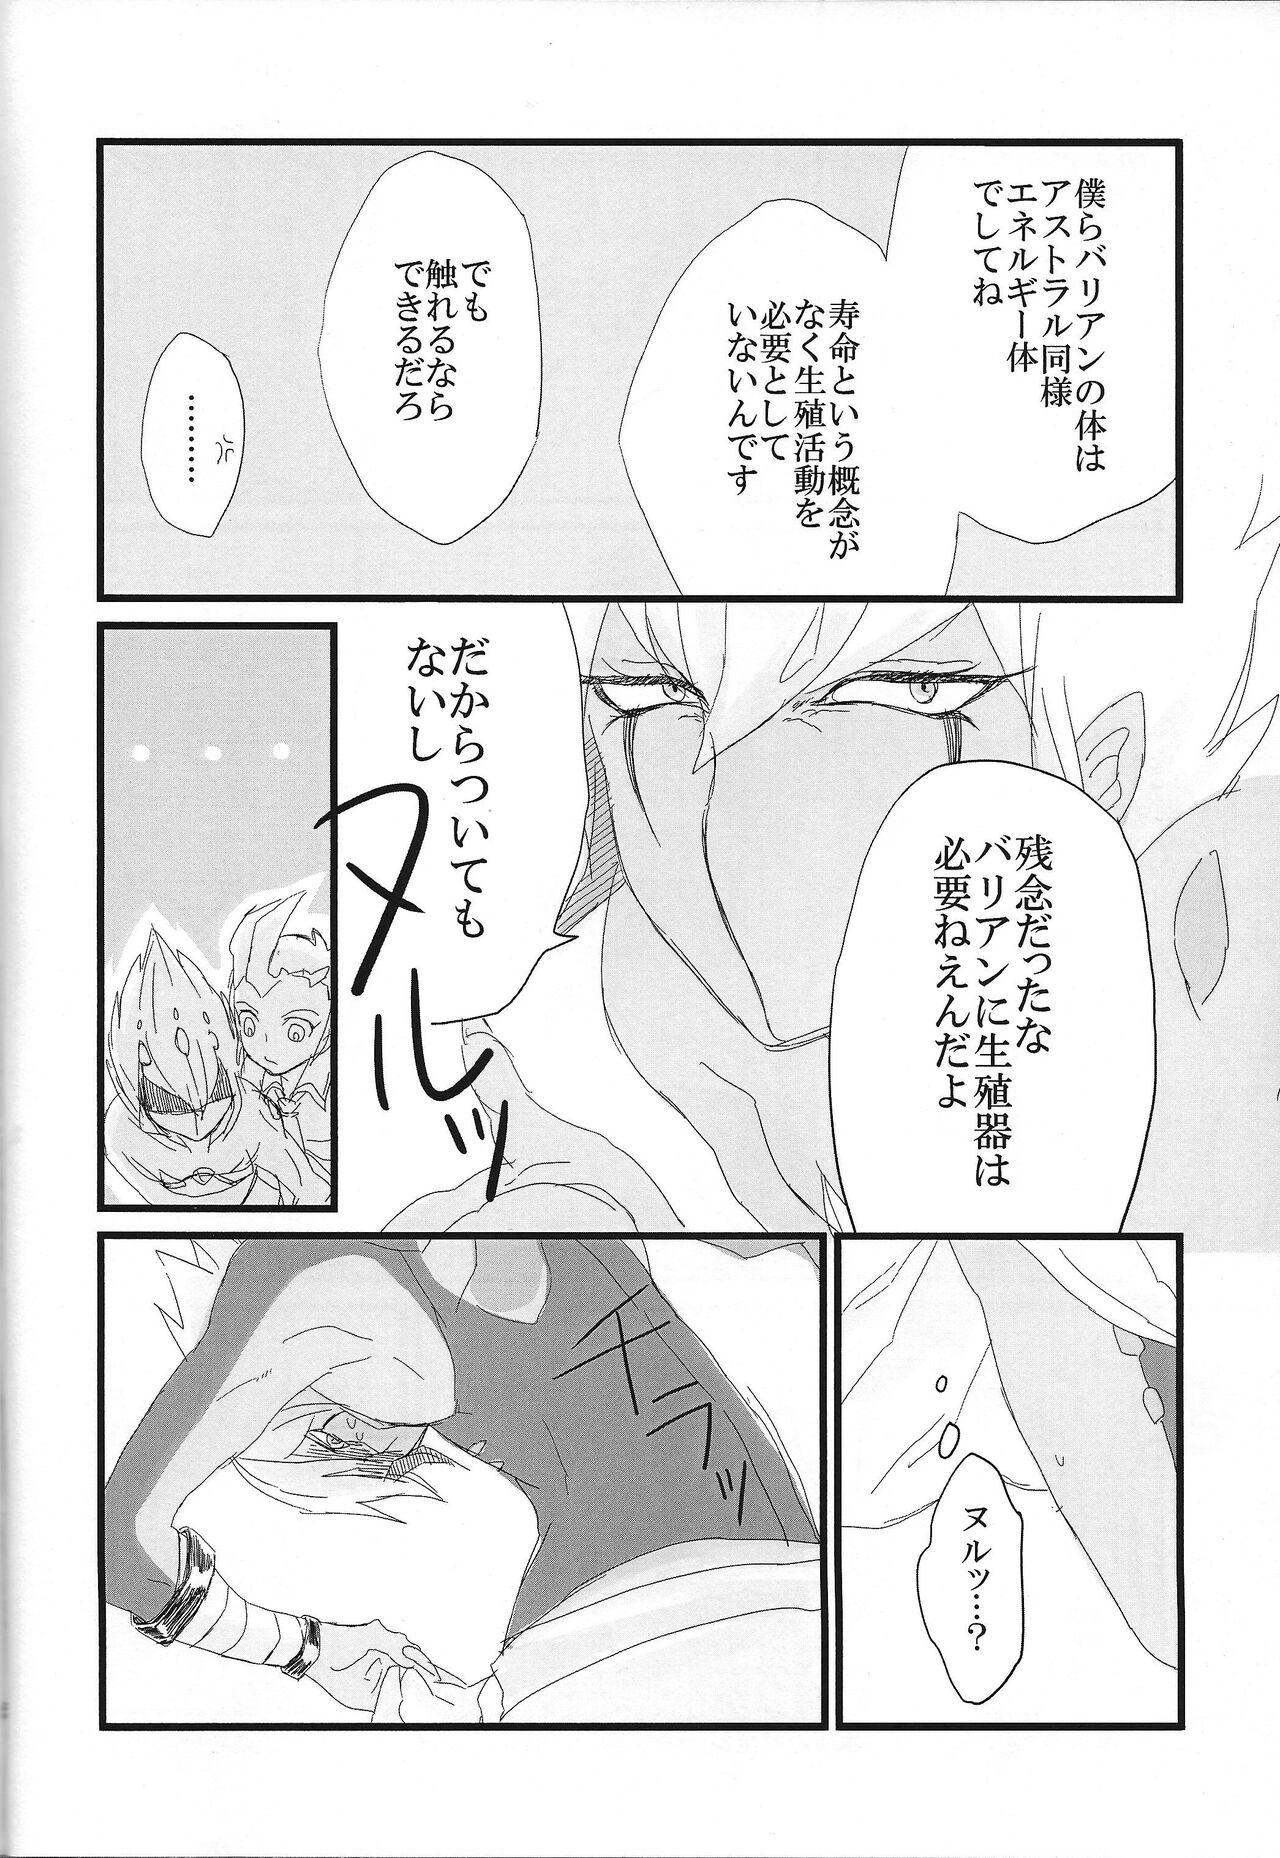 Dance Kikikaikai - Yu-gi-oh zexal 19yo - Page 5